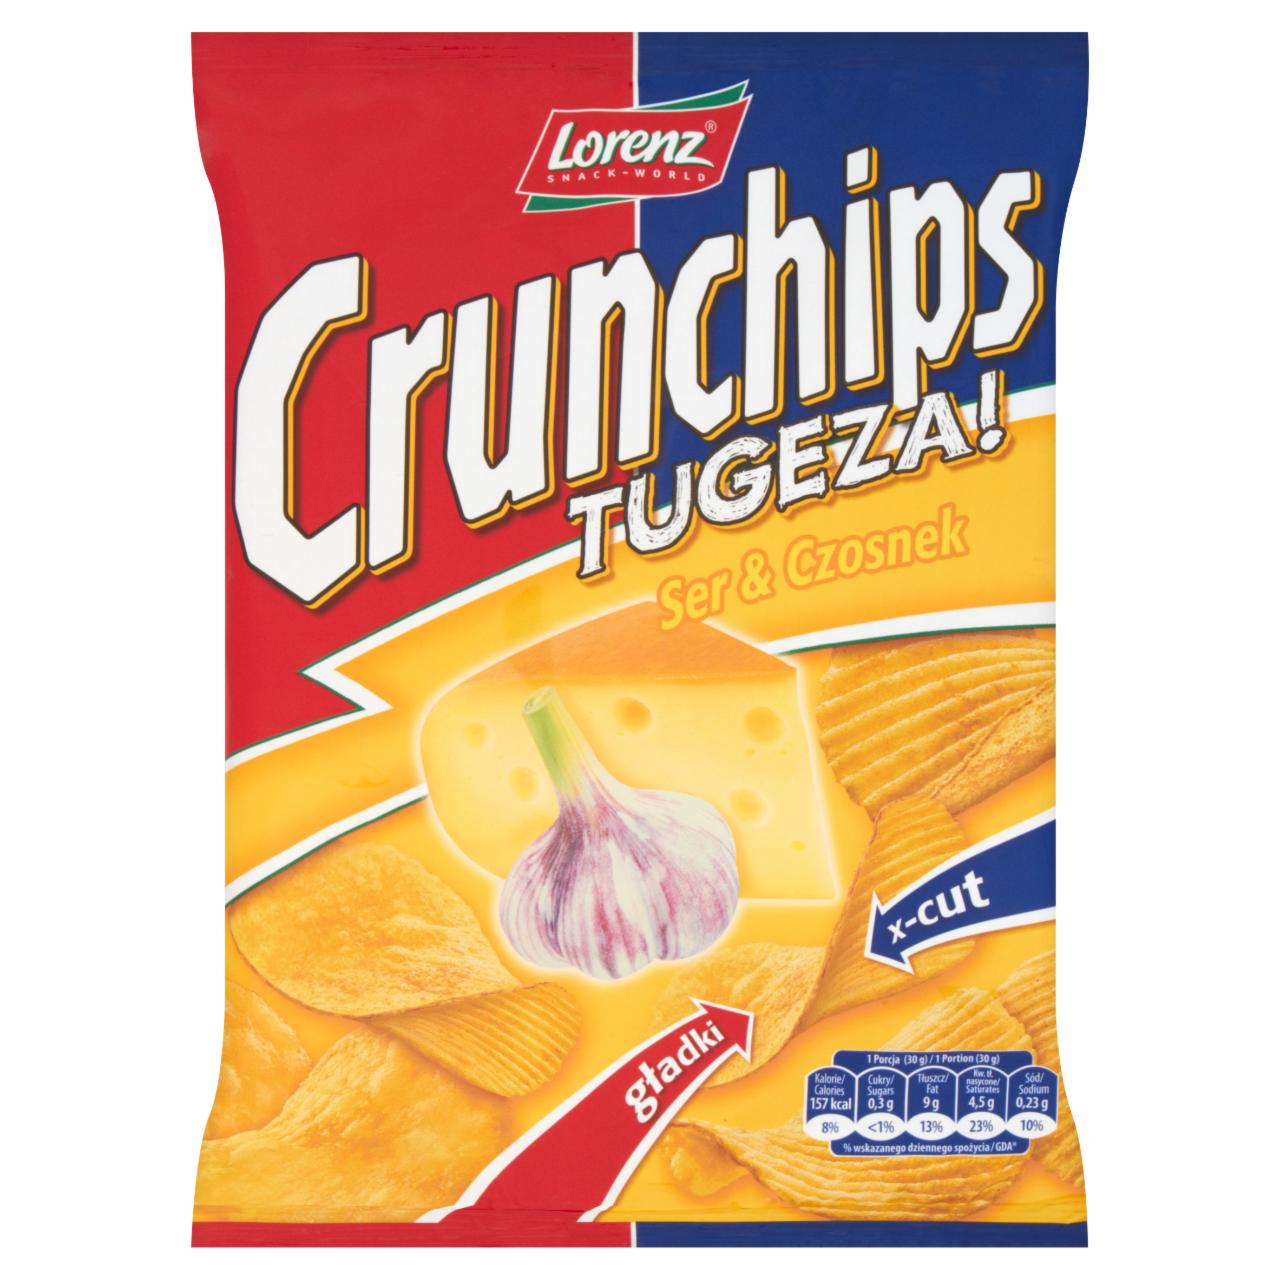 Zdjęcia - Crunchips Tugeza Ser i Czosnek Chipsy ziemniaczane 140 g